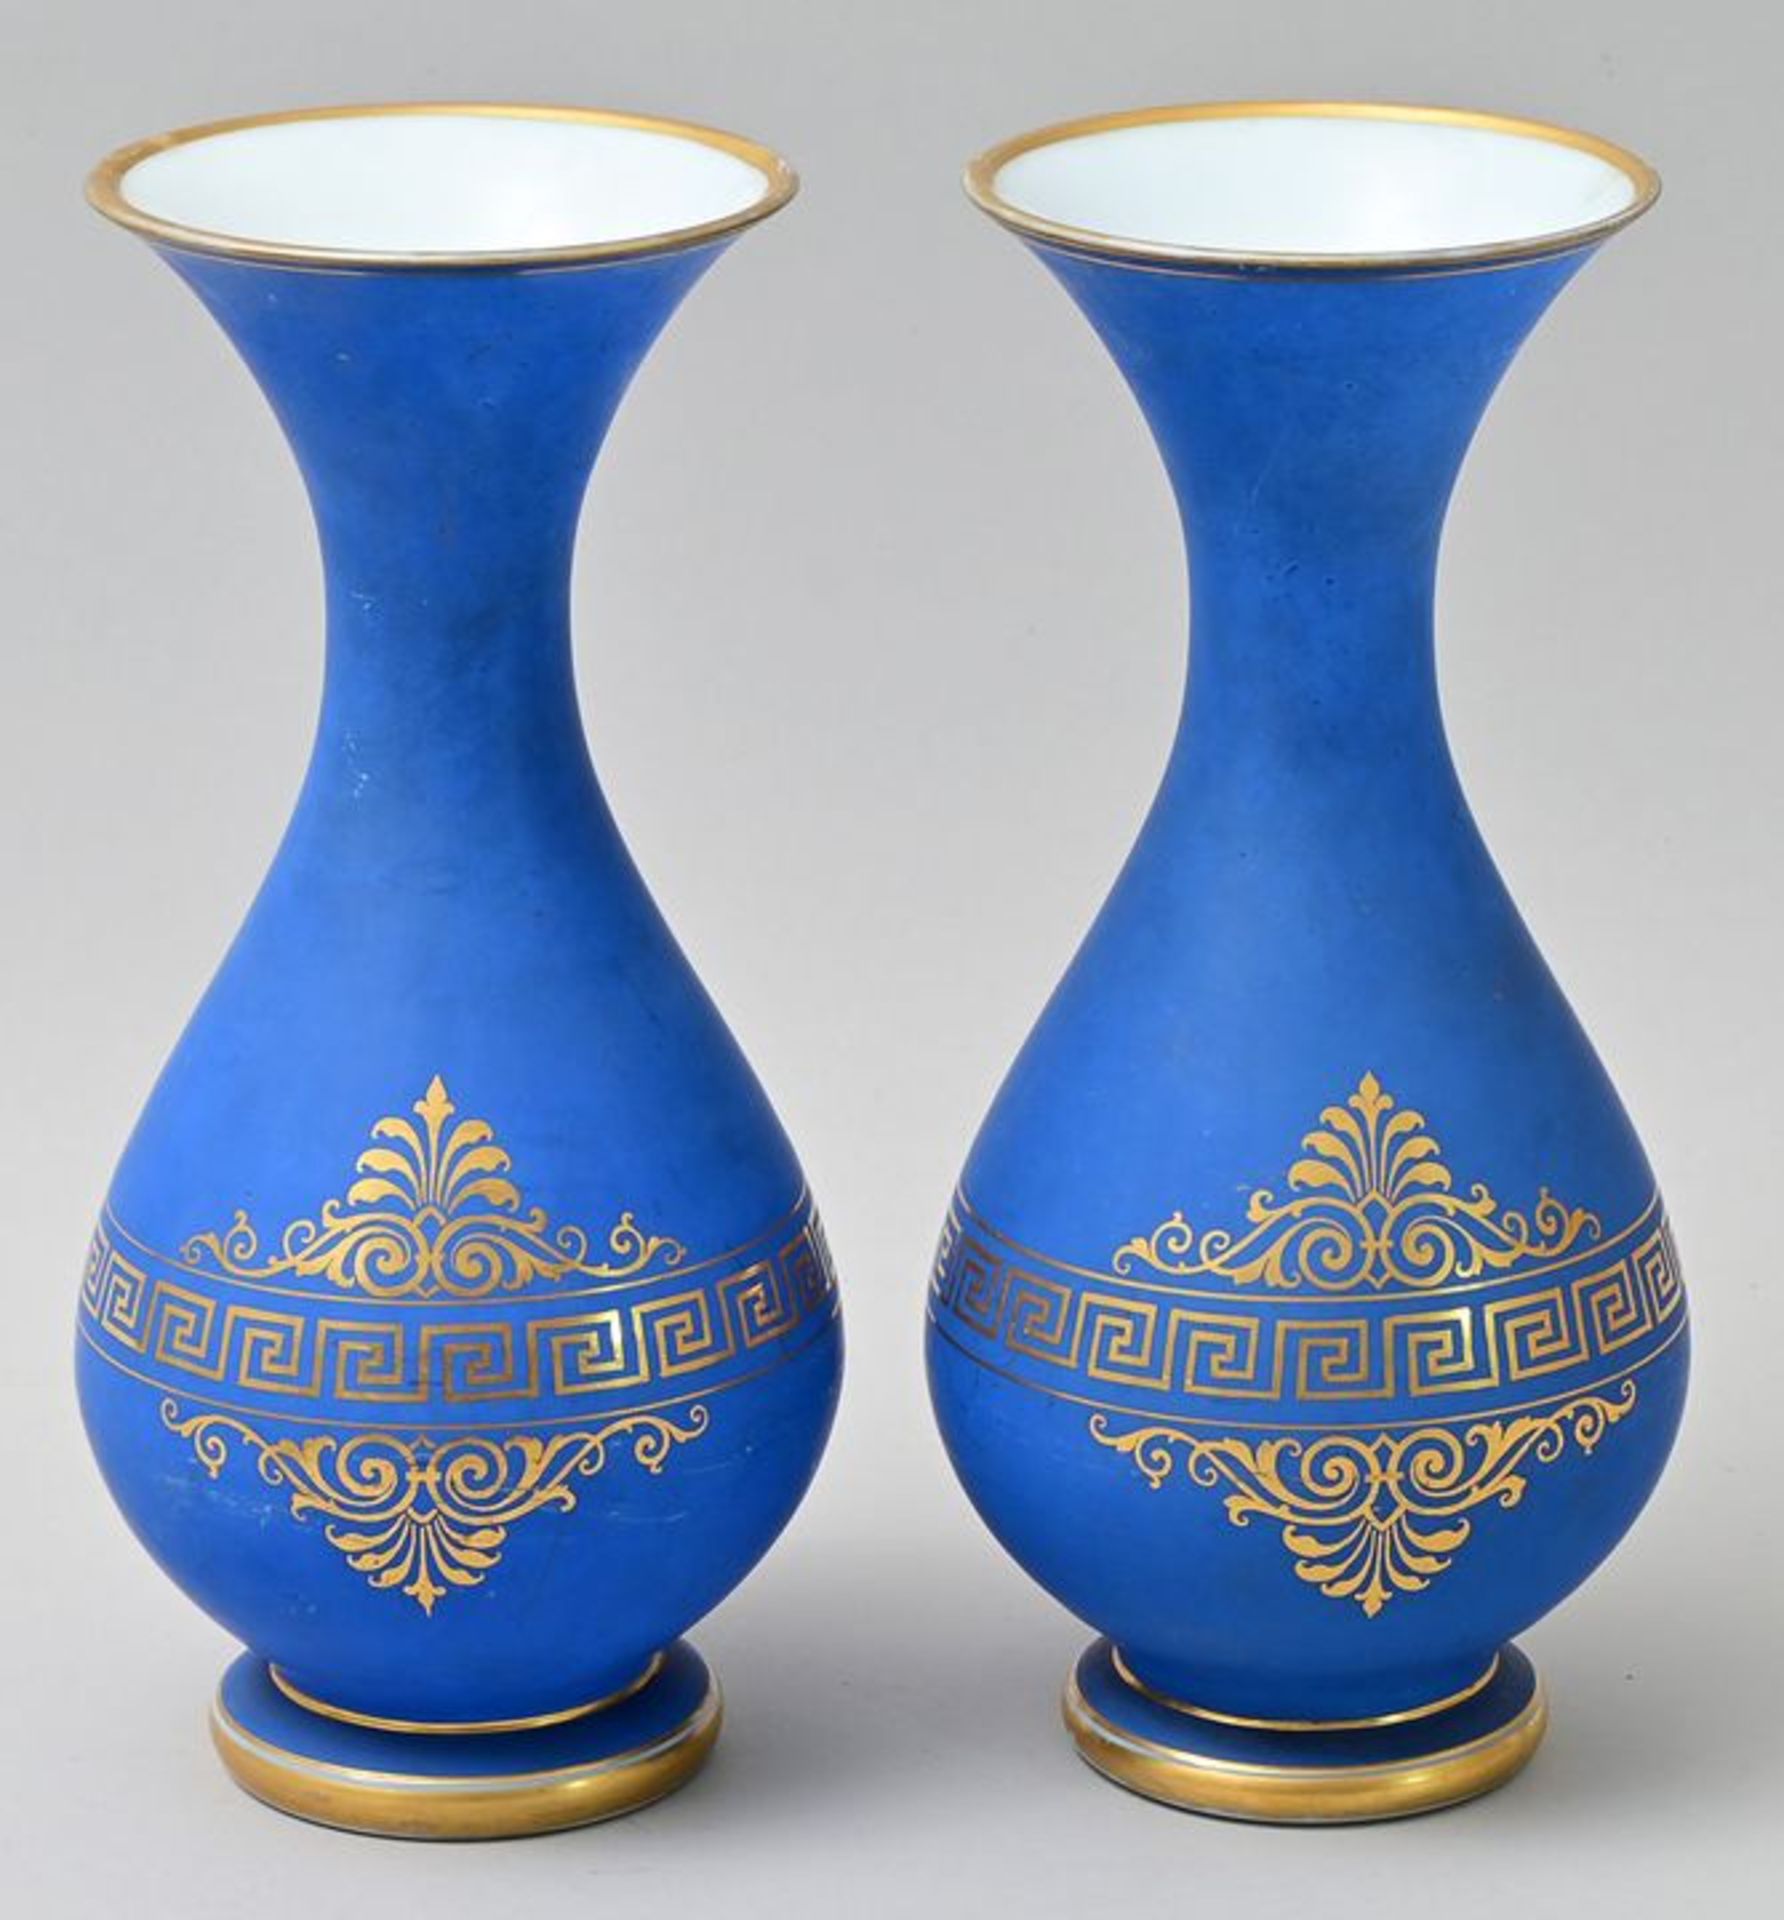 Paar Vasen/ vases - Image 2 of 3